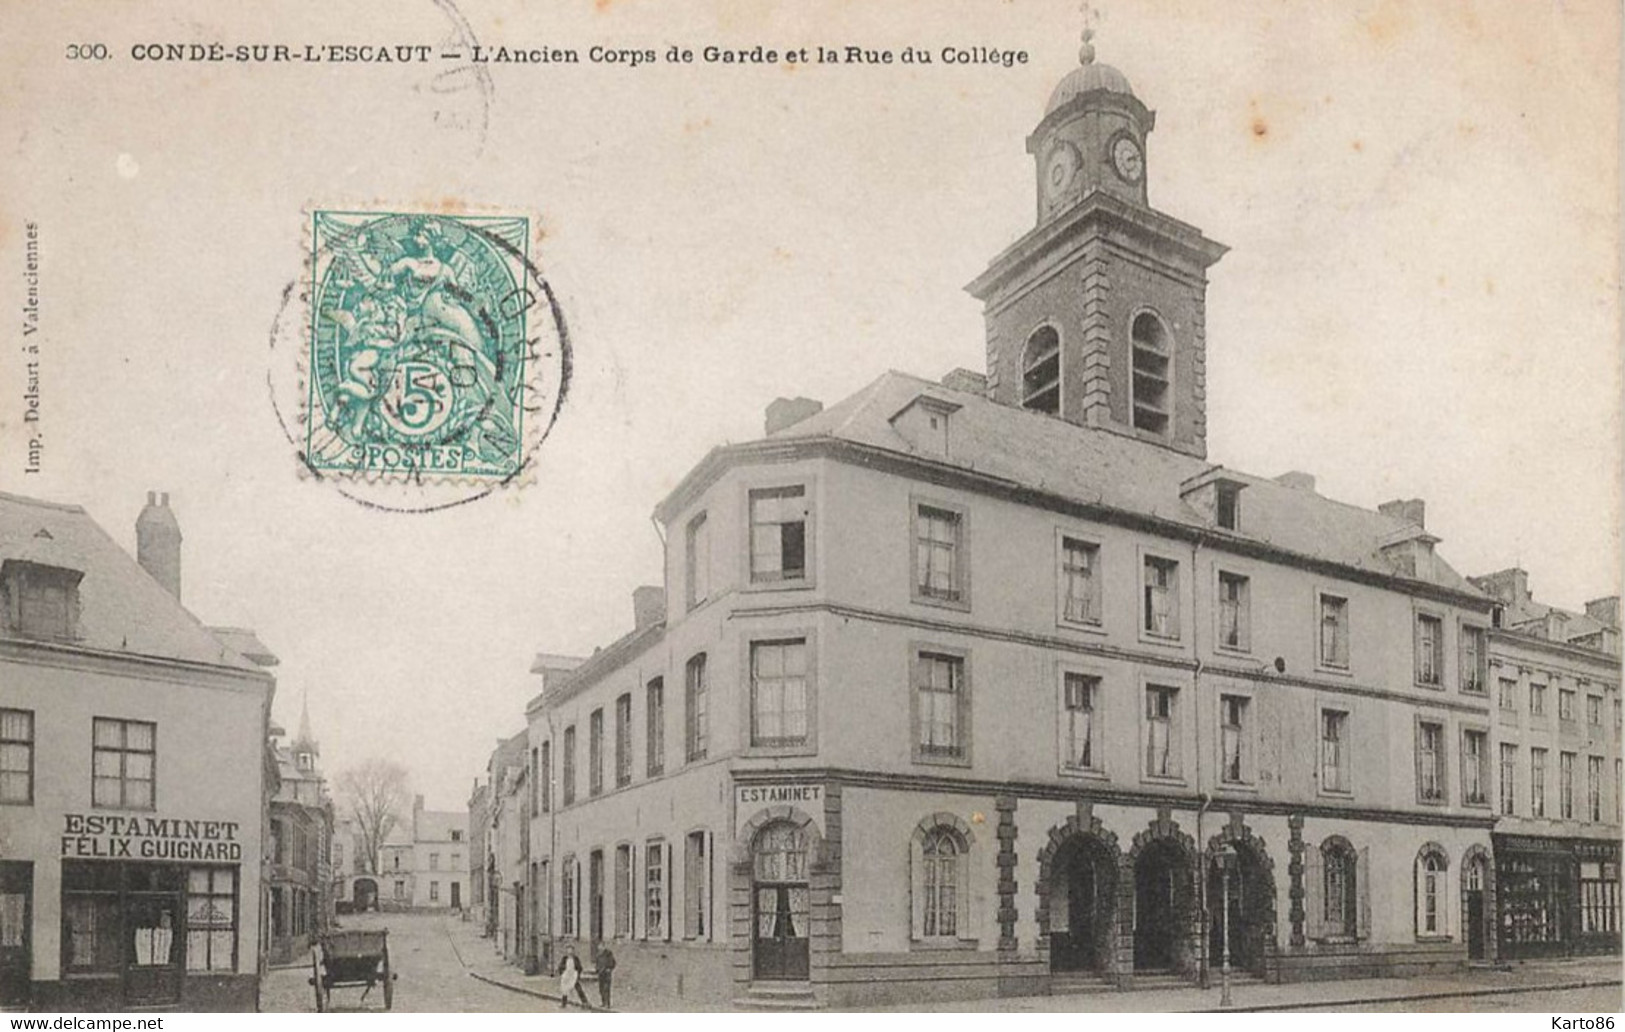 Condé Sur L'escaut * 1907 * L'ancien Corps De Gare Et La Rue Du Collège * Estaminet Félix GUIGNARD - Conde Sur Escaut